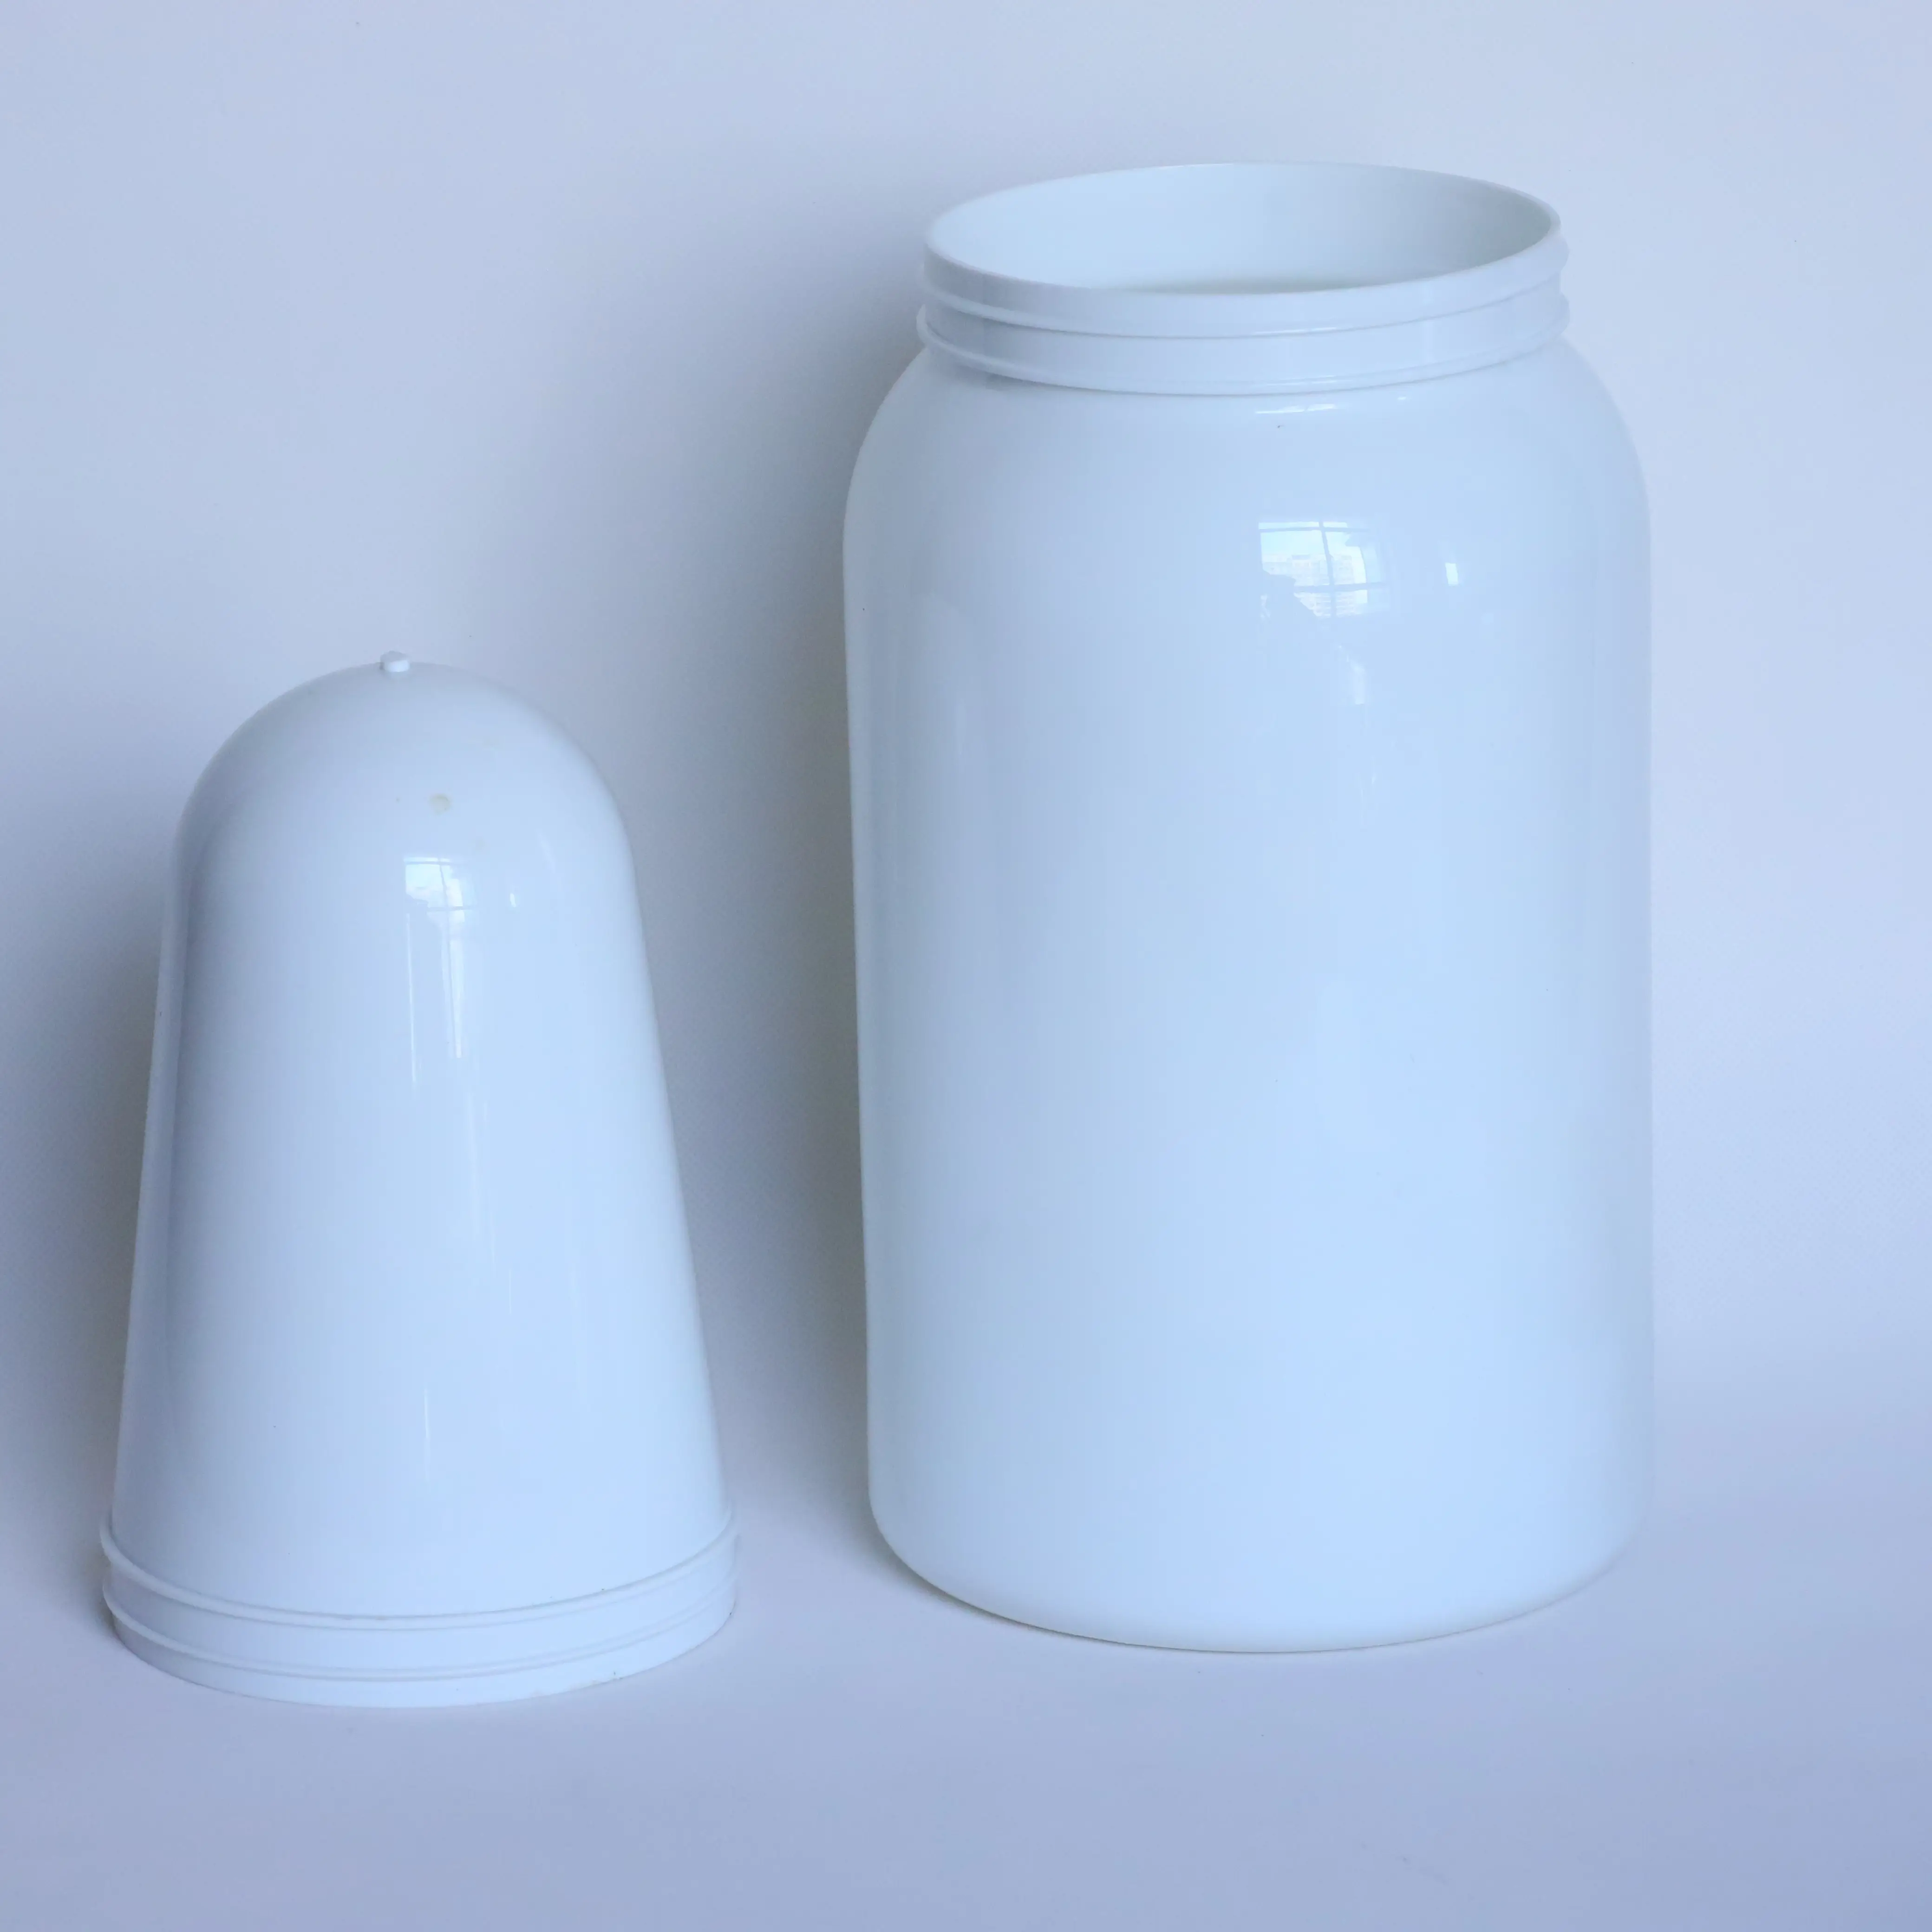 Pré-forma 100% nova de plástico PET para 5 litros de matéria-prima, frasco e lata de plástico nutricional, pré-formas de 118 mm 105 mm com tampas e folha